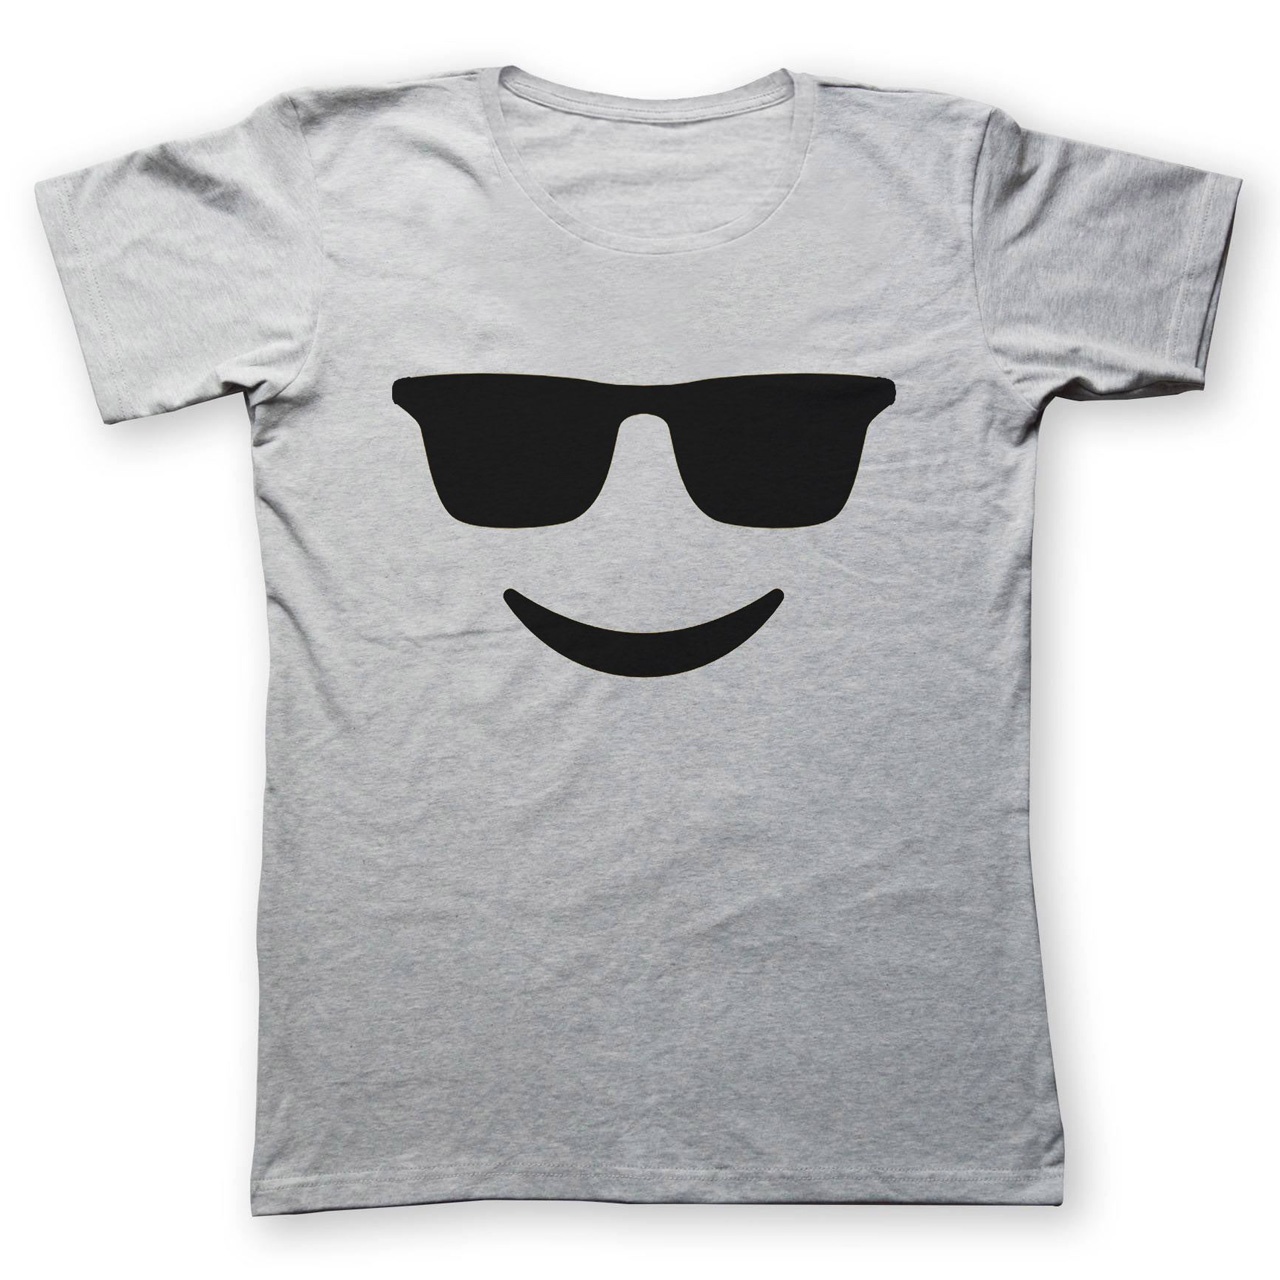 تی شرت زنانه به رسم طرح عینک کد 431